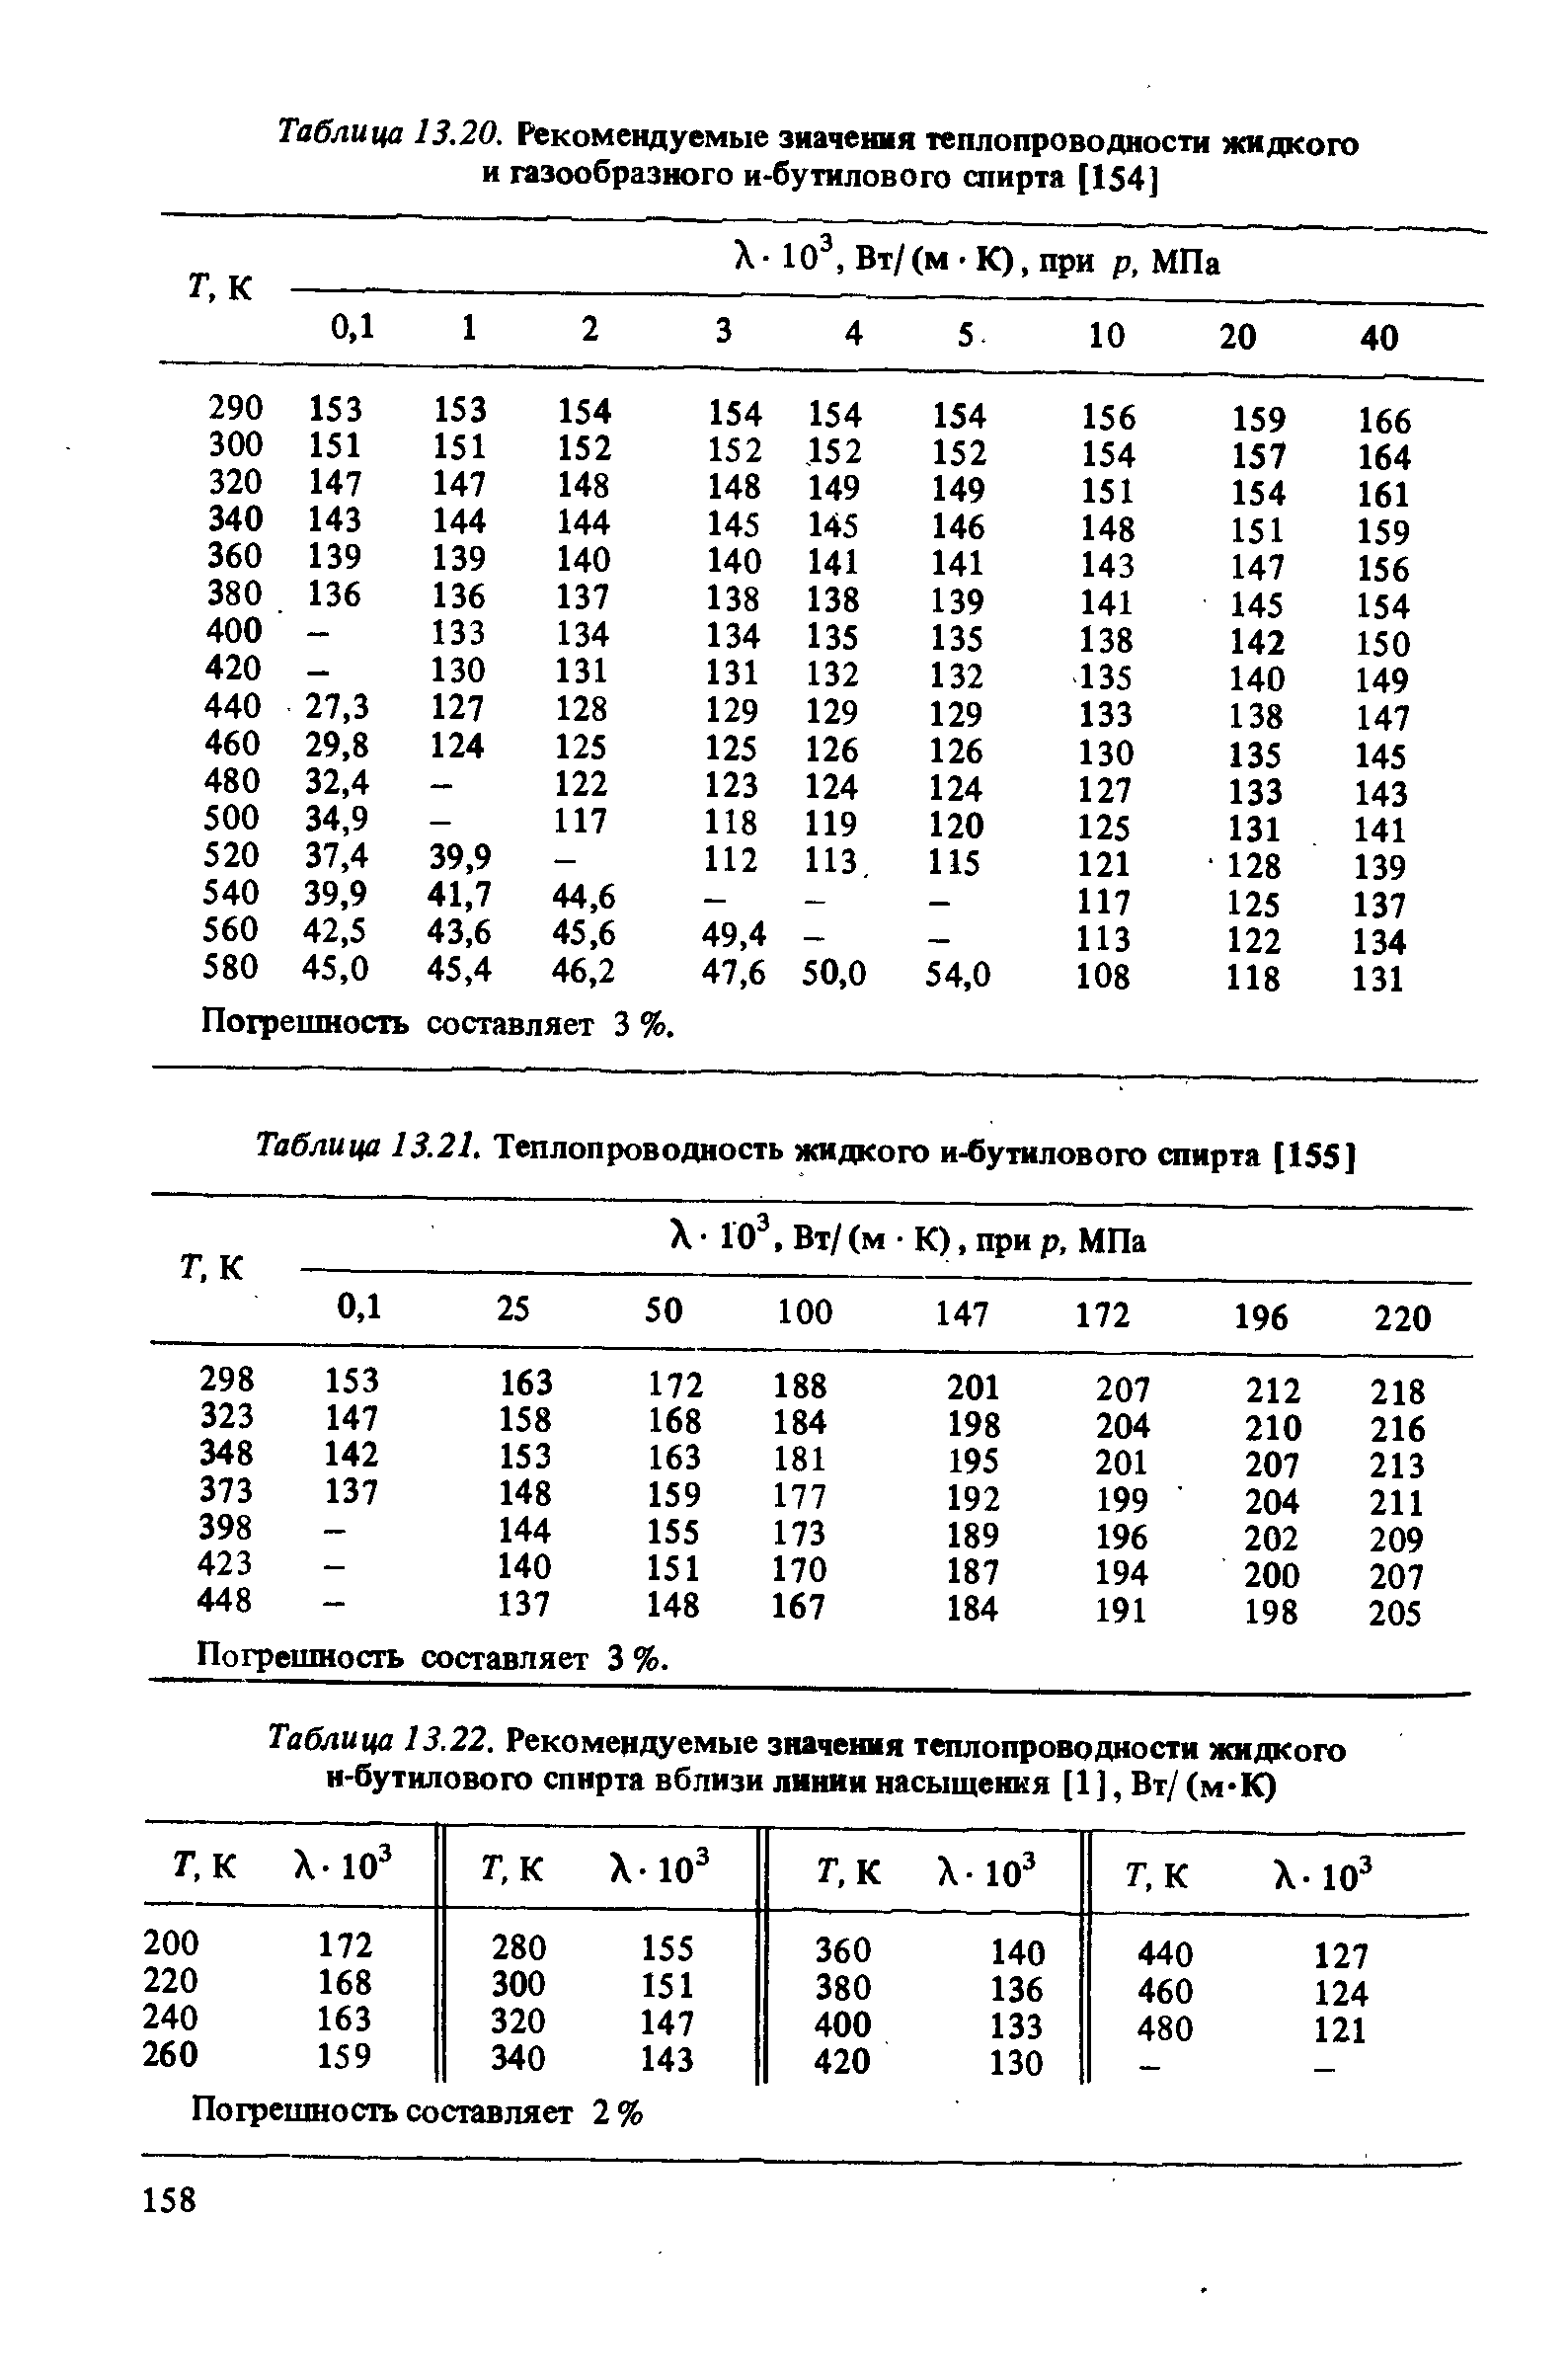 Таблица 13.21. Теплопроводность жидкого и-бутилового спирта [155]
